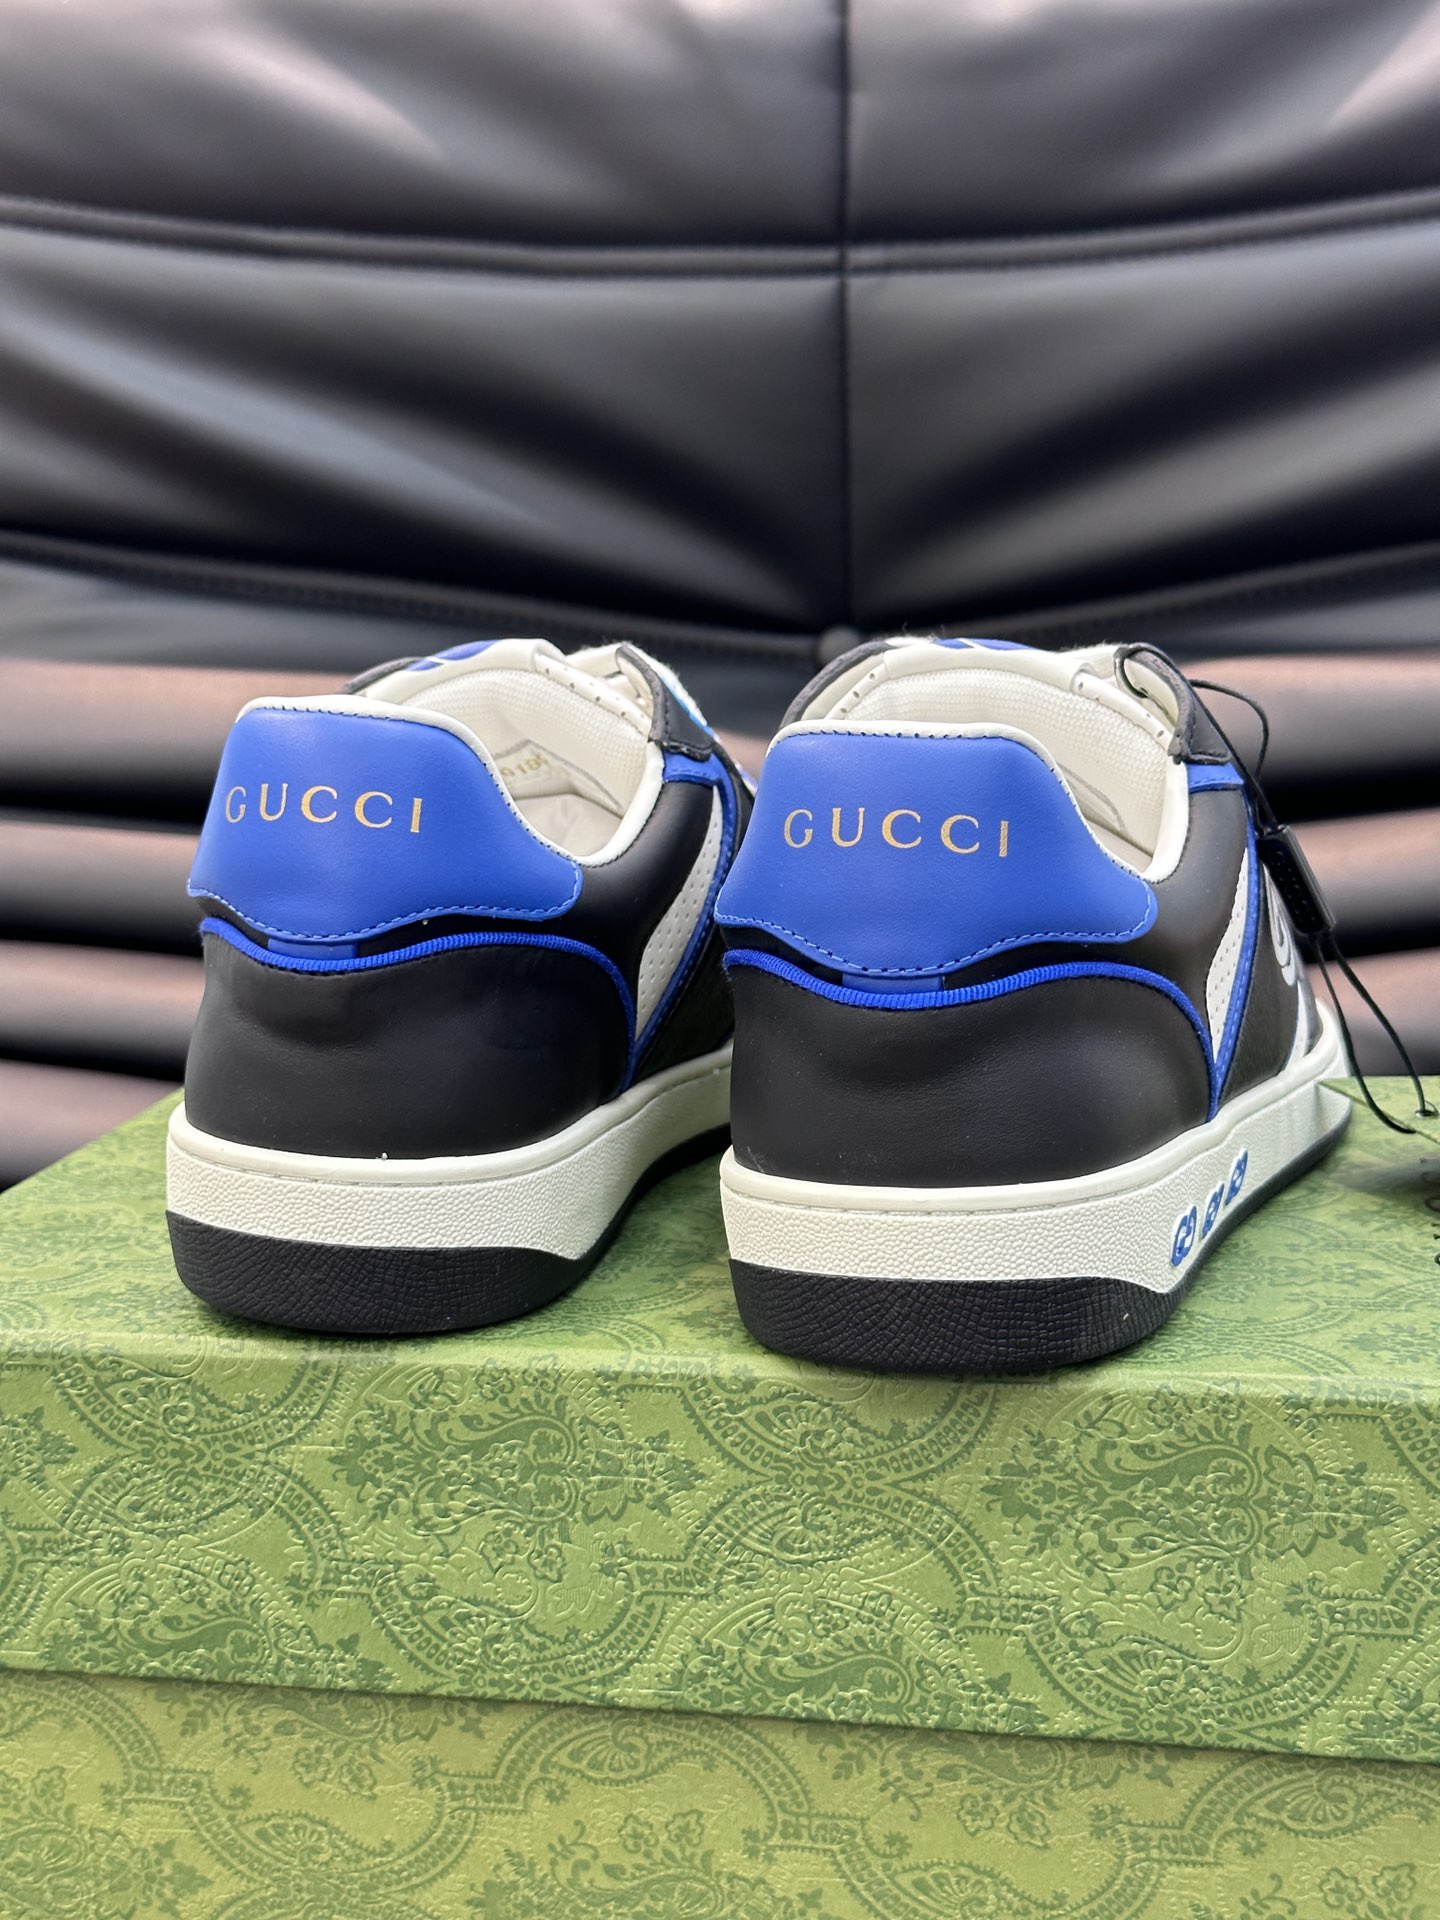 Guc*i男士MAC80运动鞋全皮版顶级品质品相完美精致小巧的互扣式双G标识浪漫诠释此系列的美学理念选用